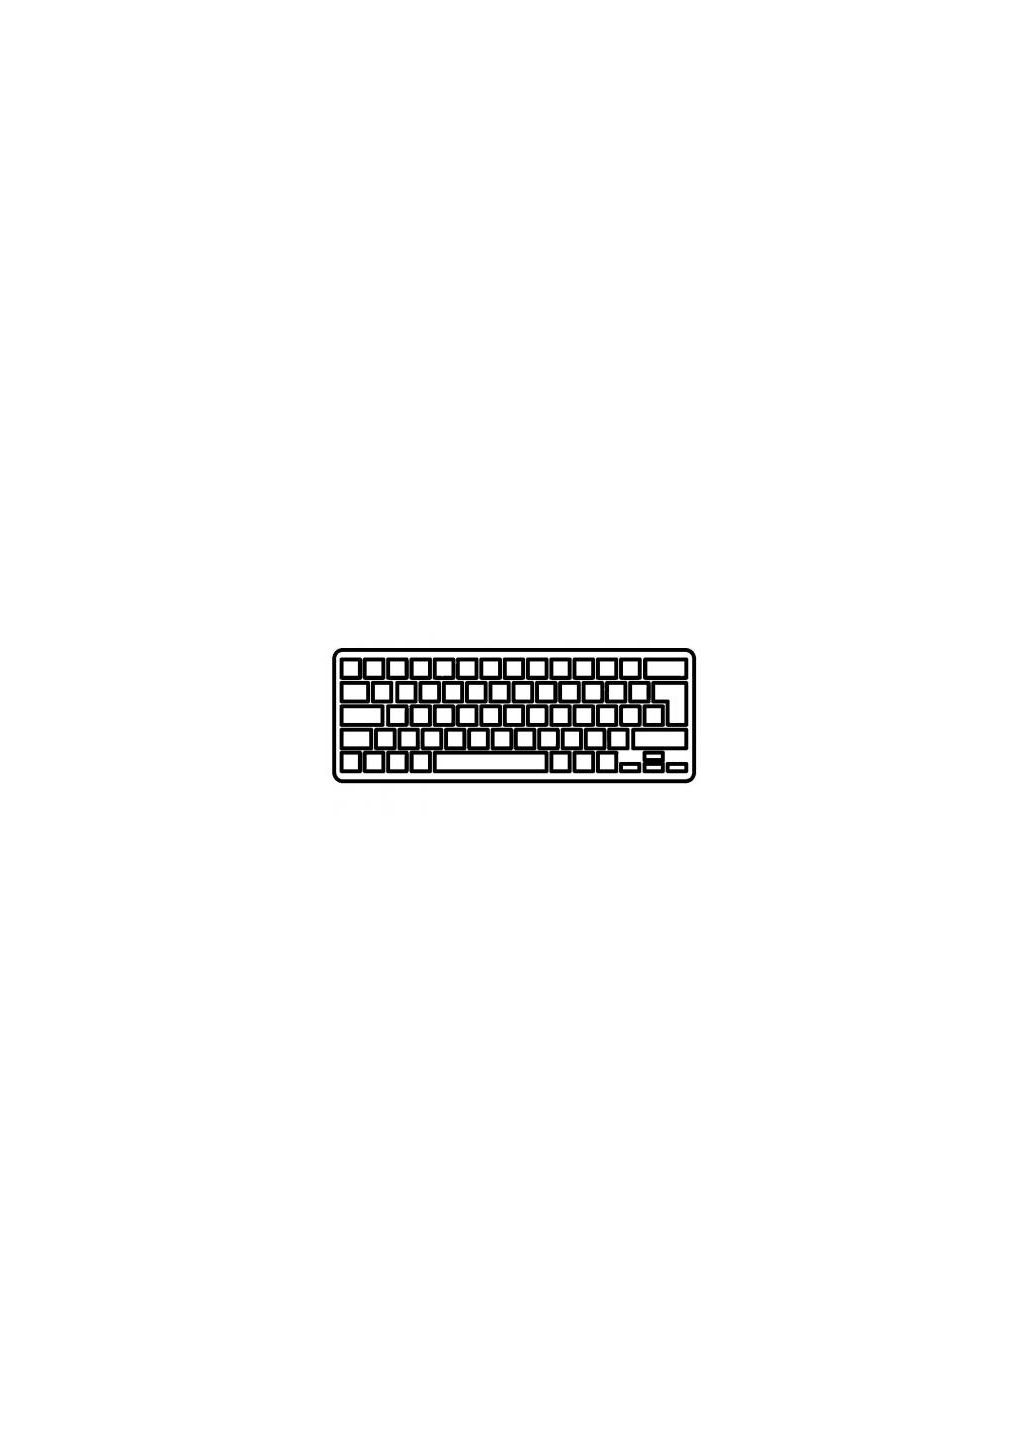 Клавиатура ноутбука (A43532) Lenovo thinkpad e320/e325/e420/e425 series черная ru (276707003)